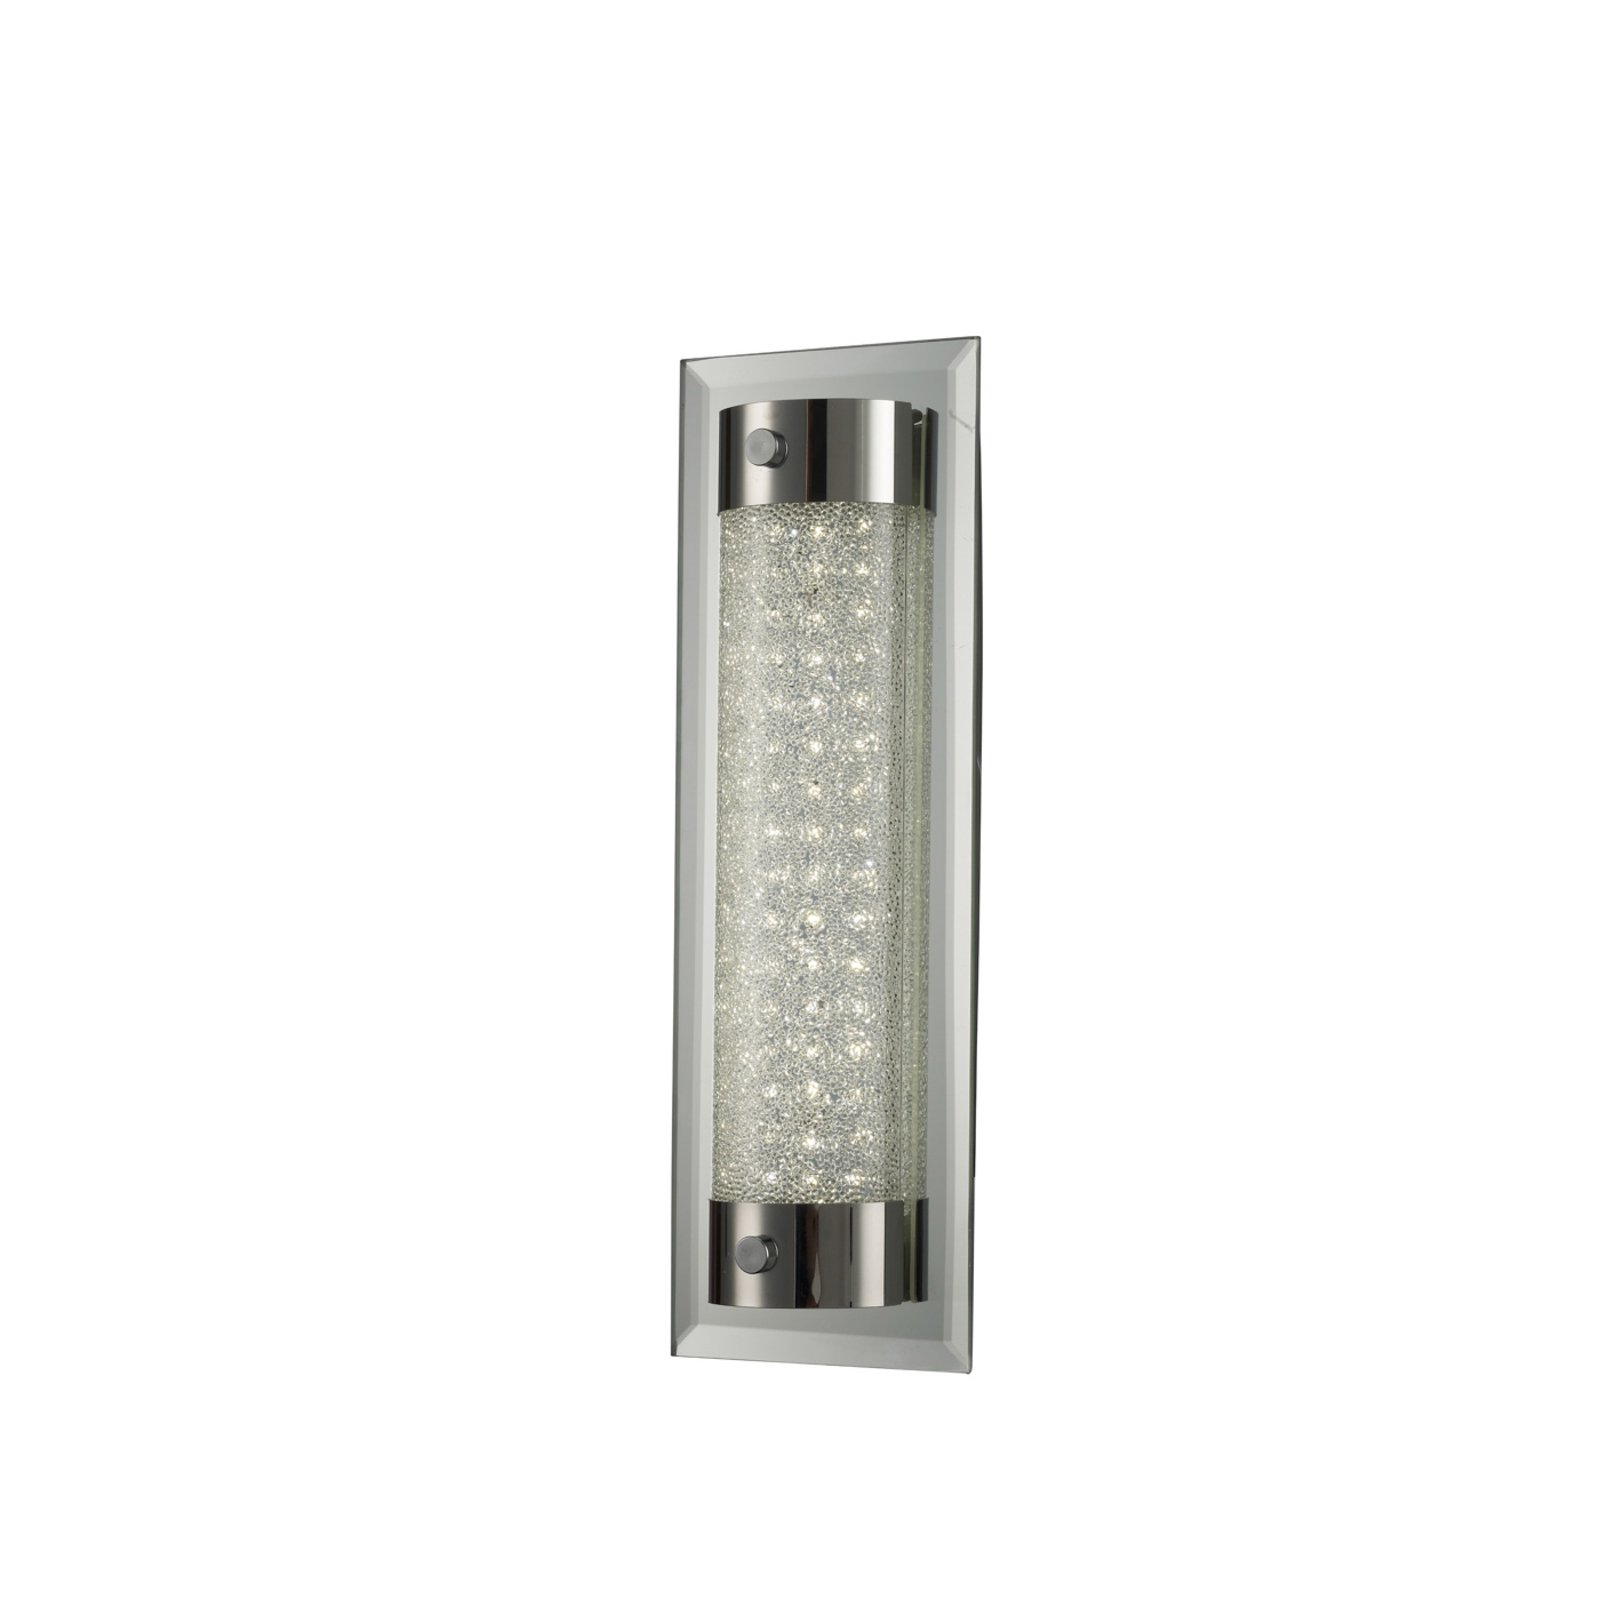 Vamzdinis LED sieninis šviestuvas, 30 cm aukščio